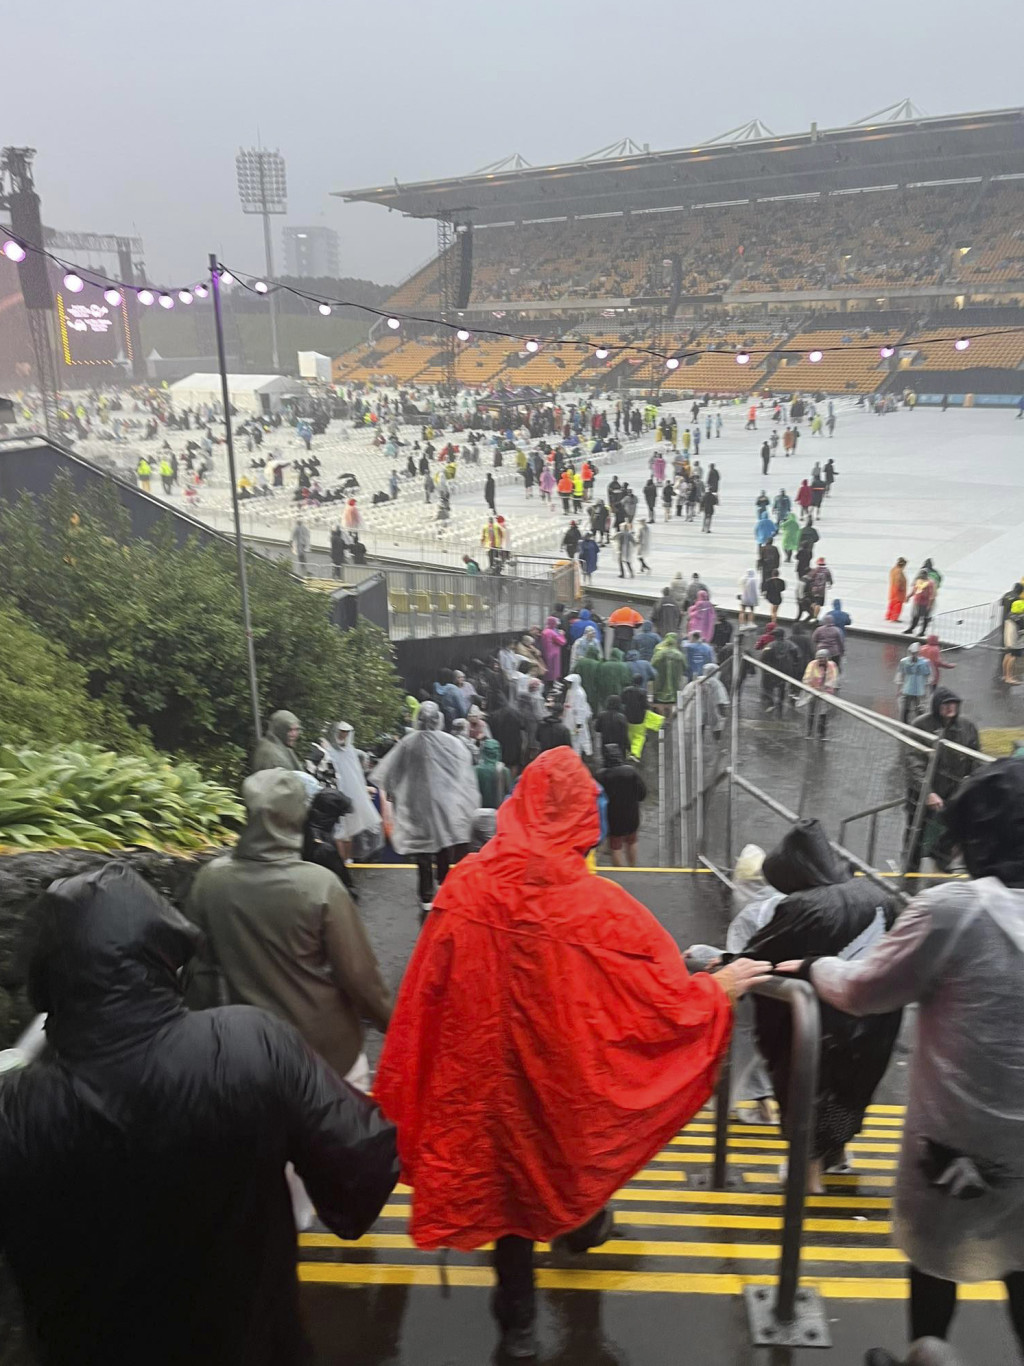 艾頓莊演唱會因大雨臨時取消觀眾在協助下疏散。美聯社